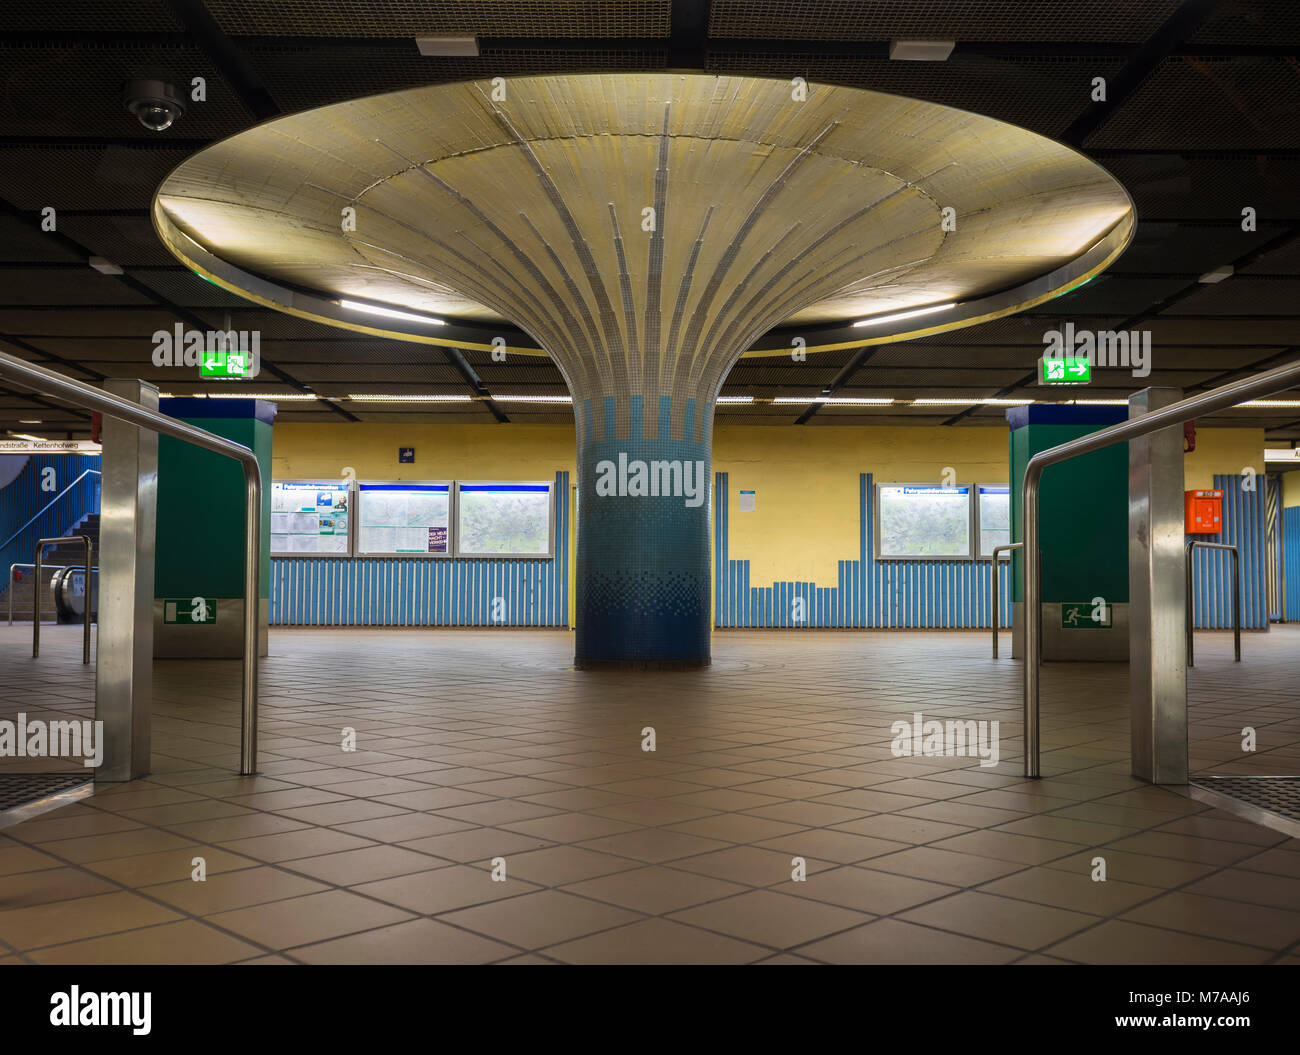 Beleuchtete Spalte in der Eingangshalle mit Fahrkartenautomaten, U-Bahn-Station Opernplatz, Westend, Frankfurt am Main, Hessen, Deutschland Stockfoto